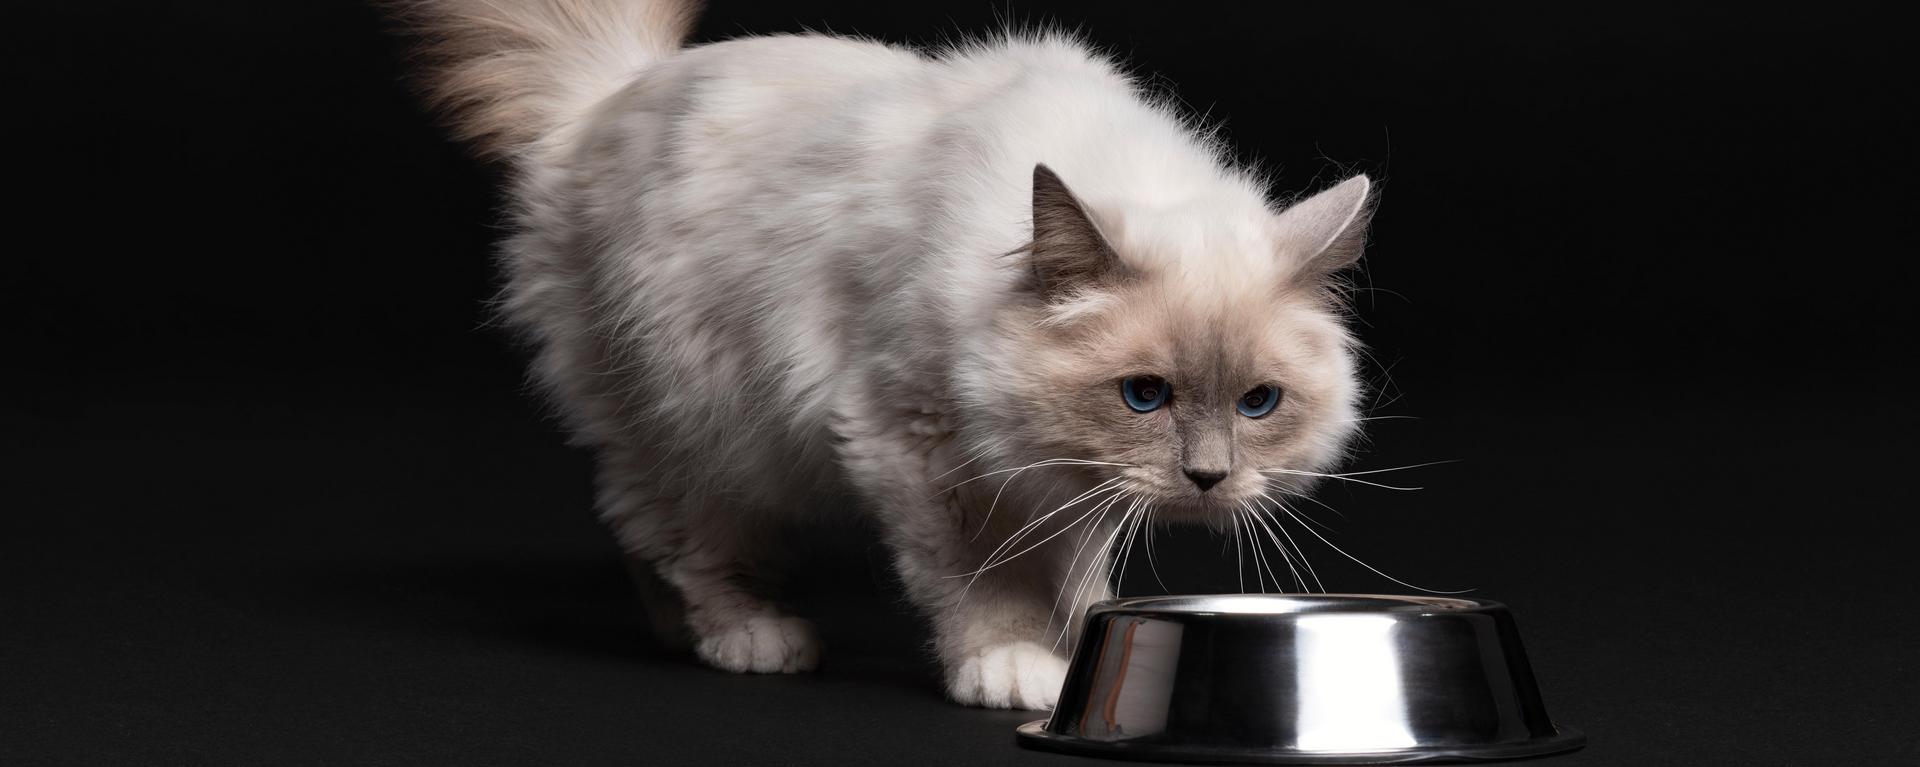 Питание стерилизованных кошек - особенности рациона